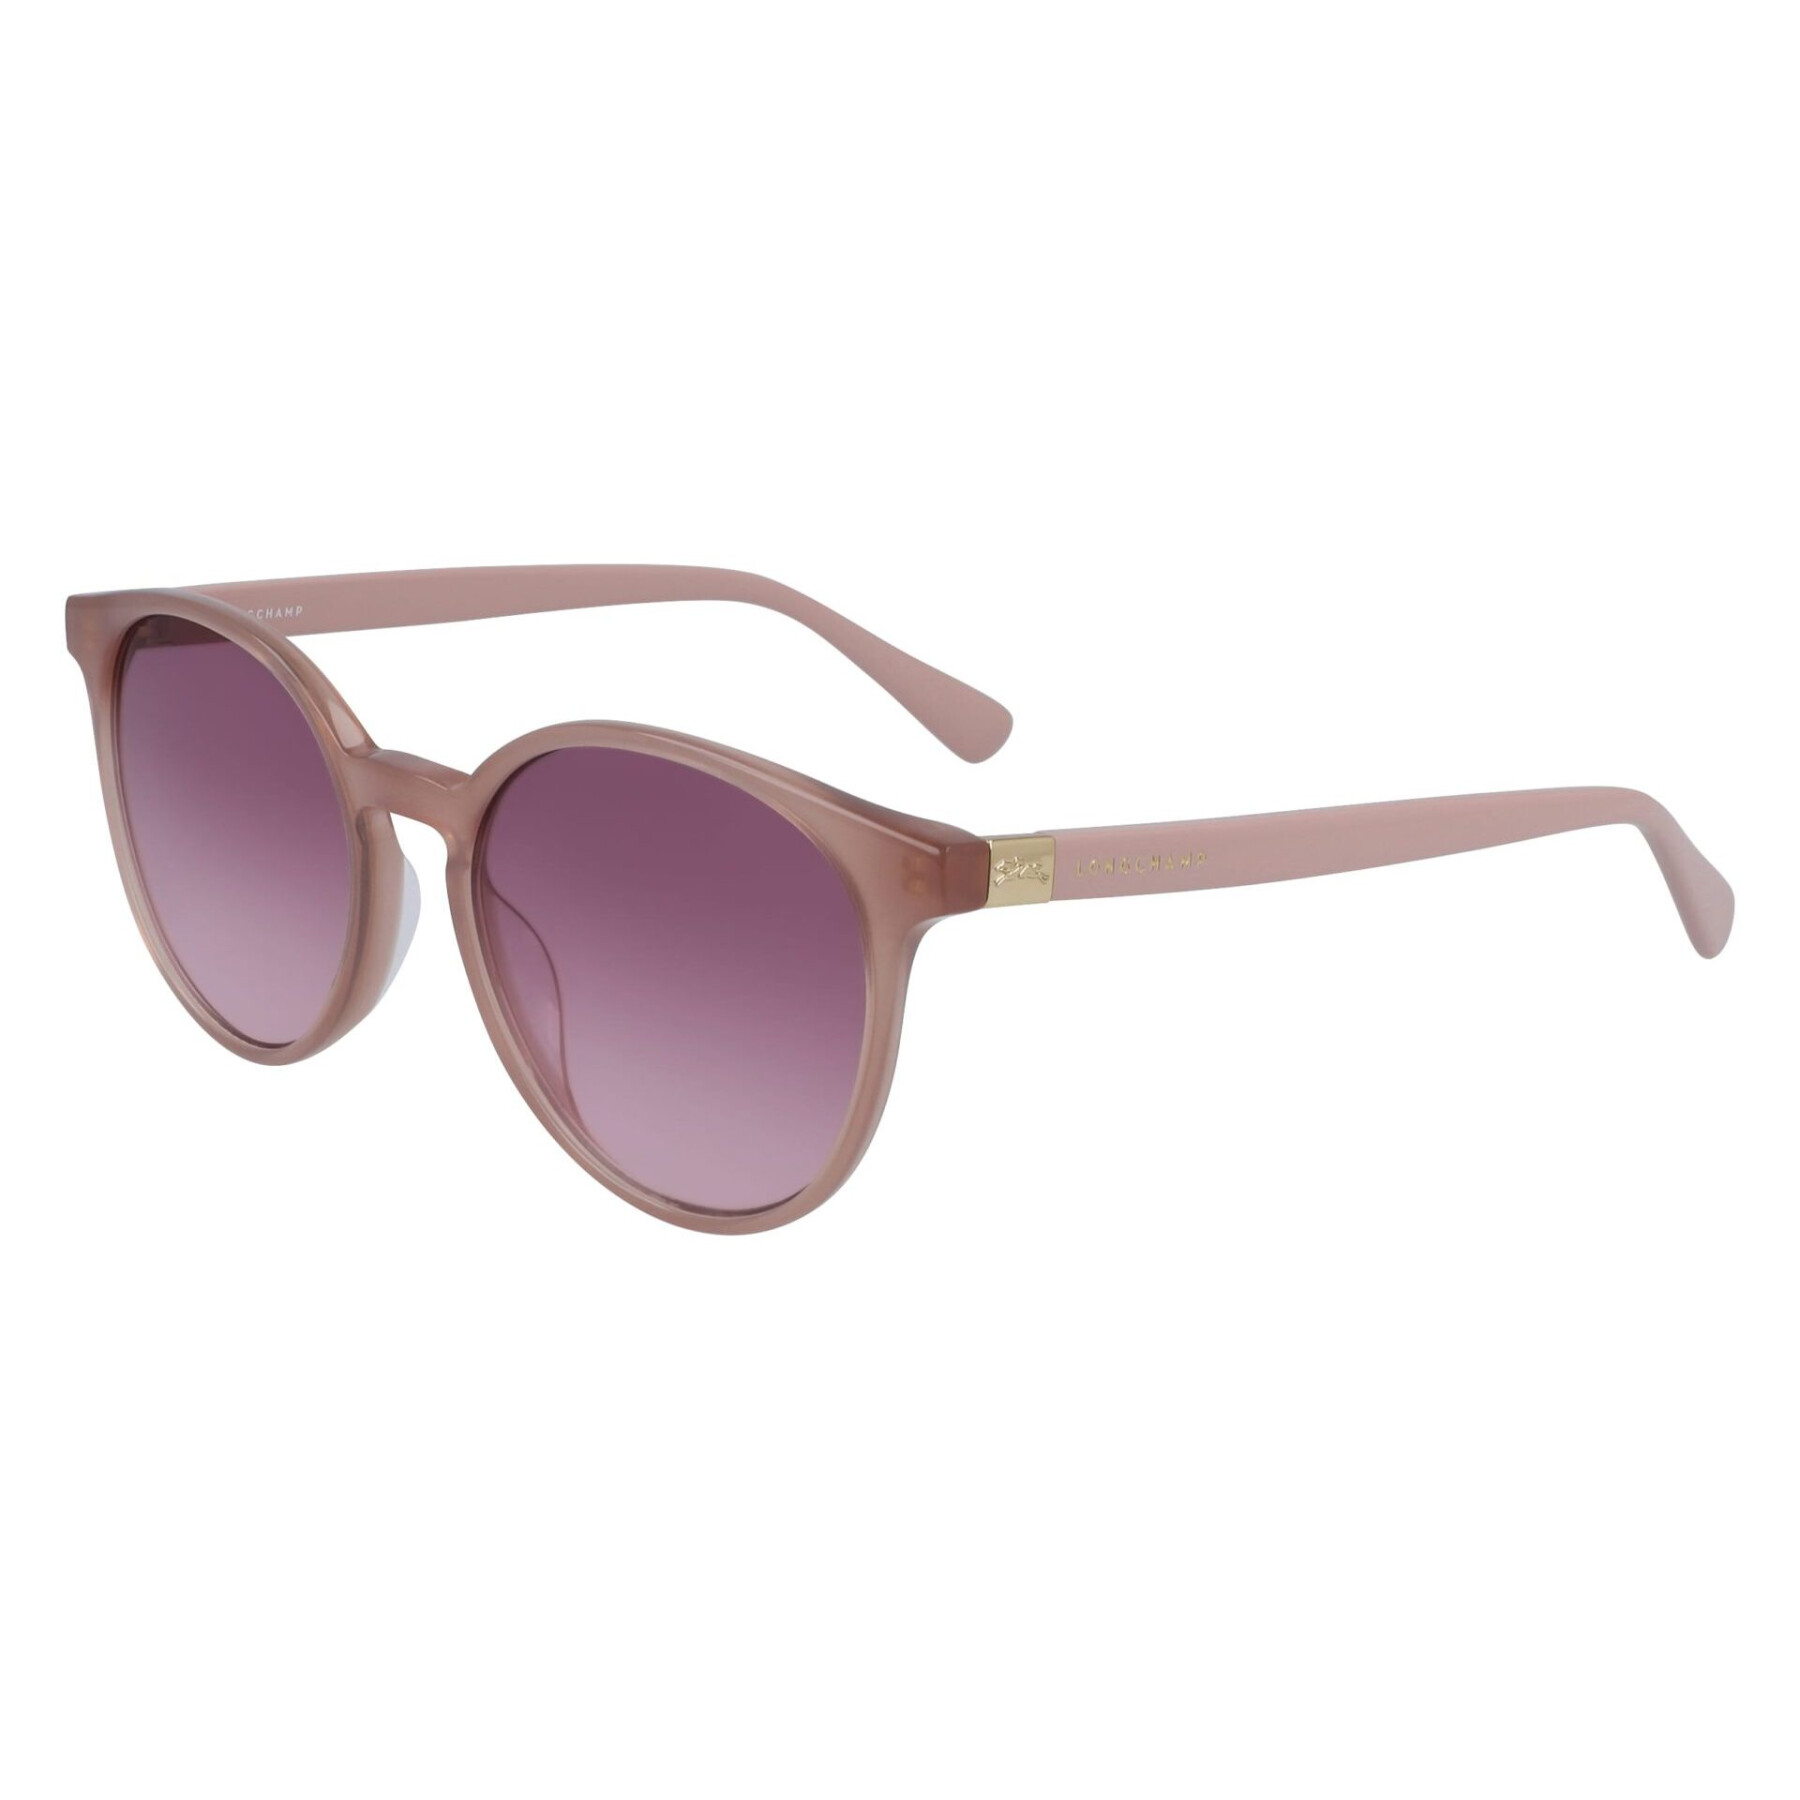 Women's sunglasses Longchamp LO658S-272